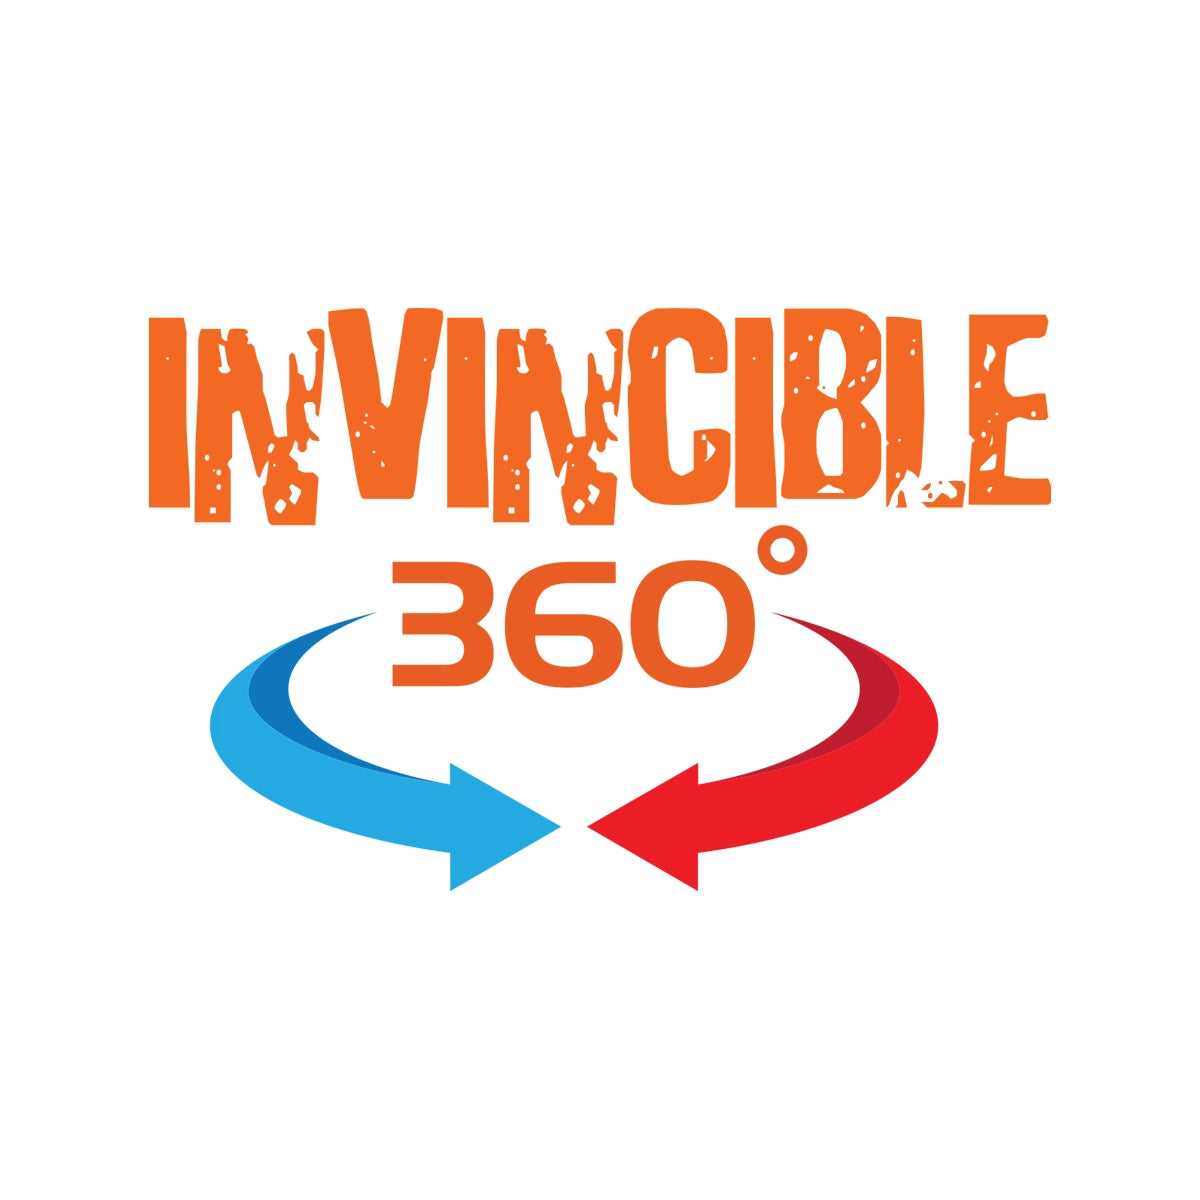 invincible360.com